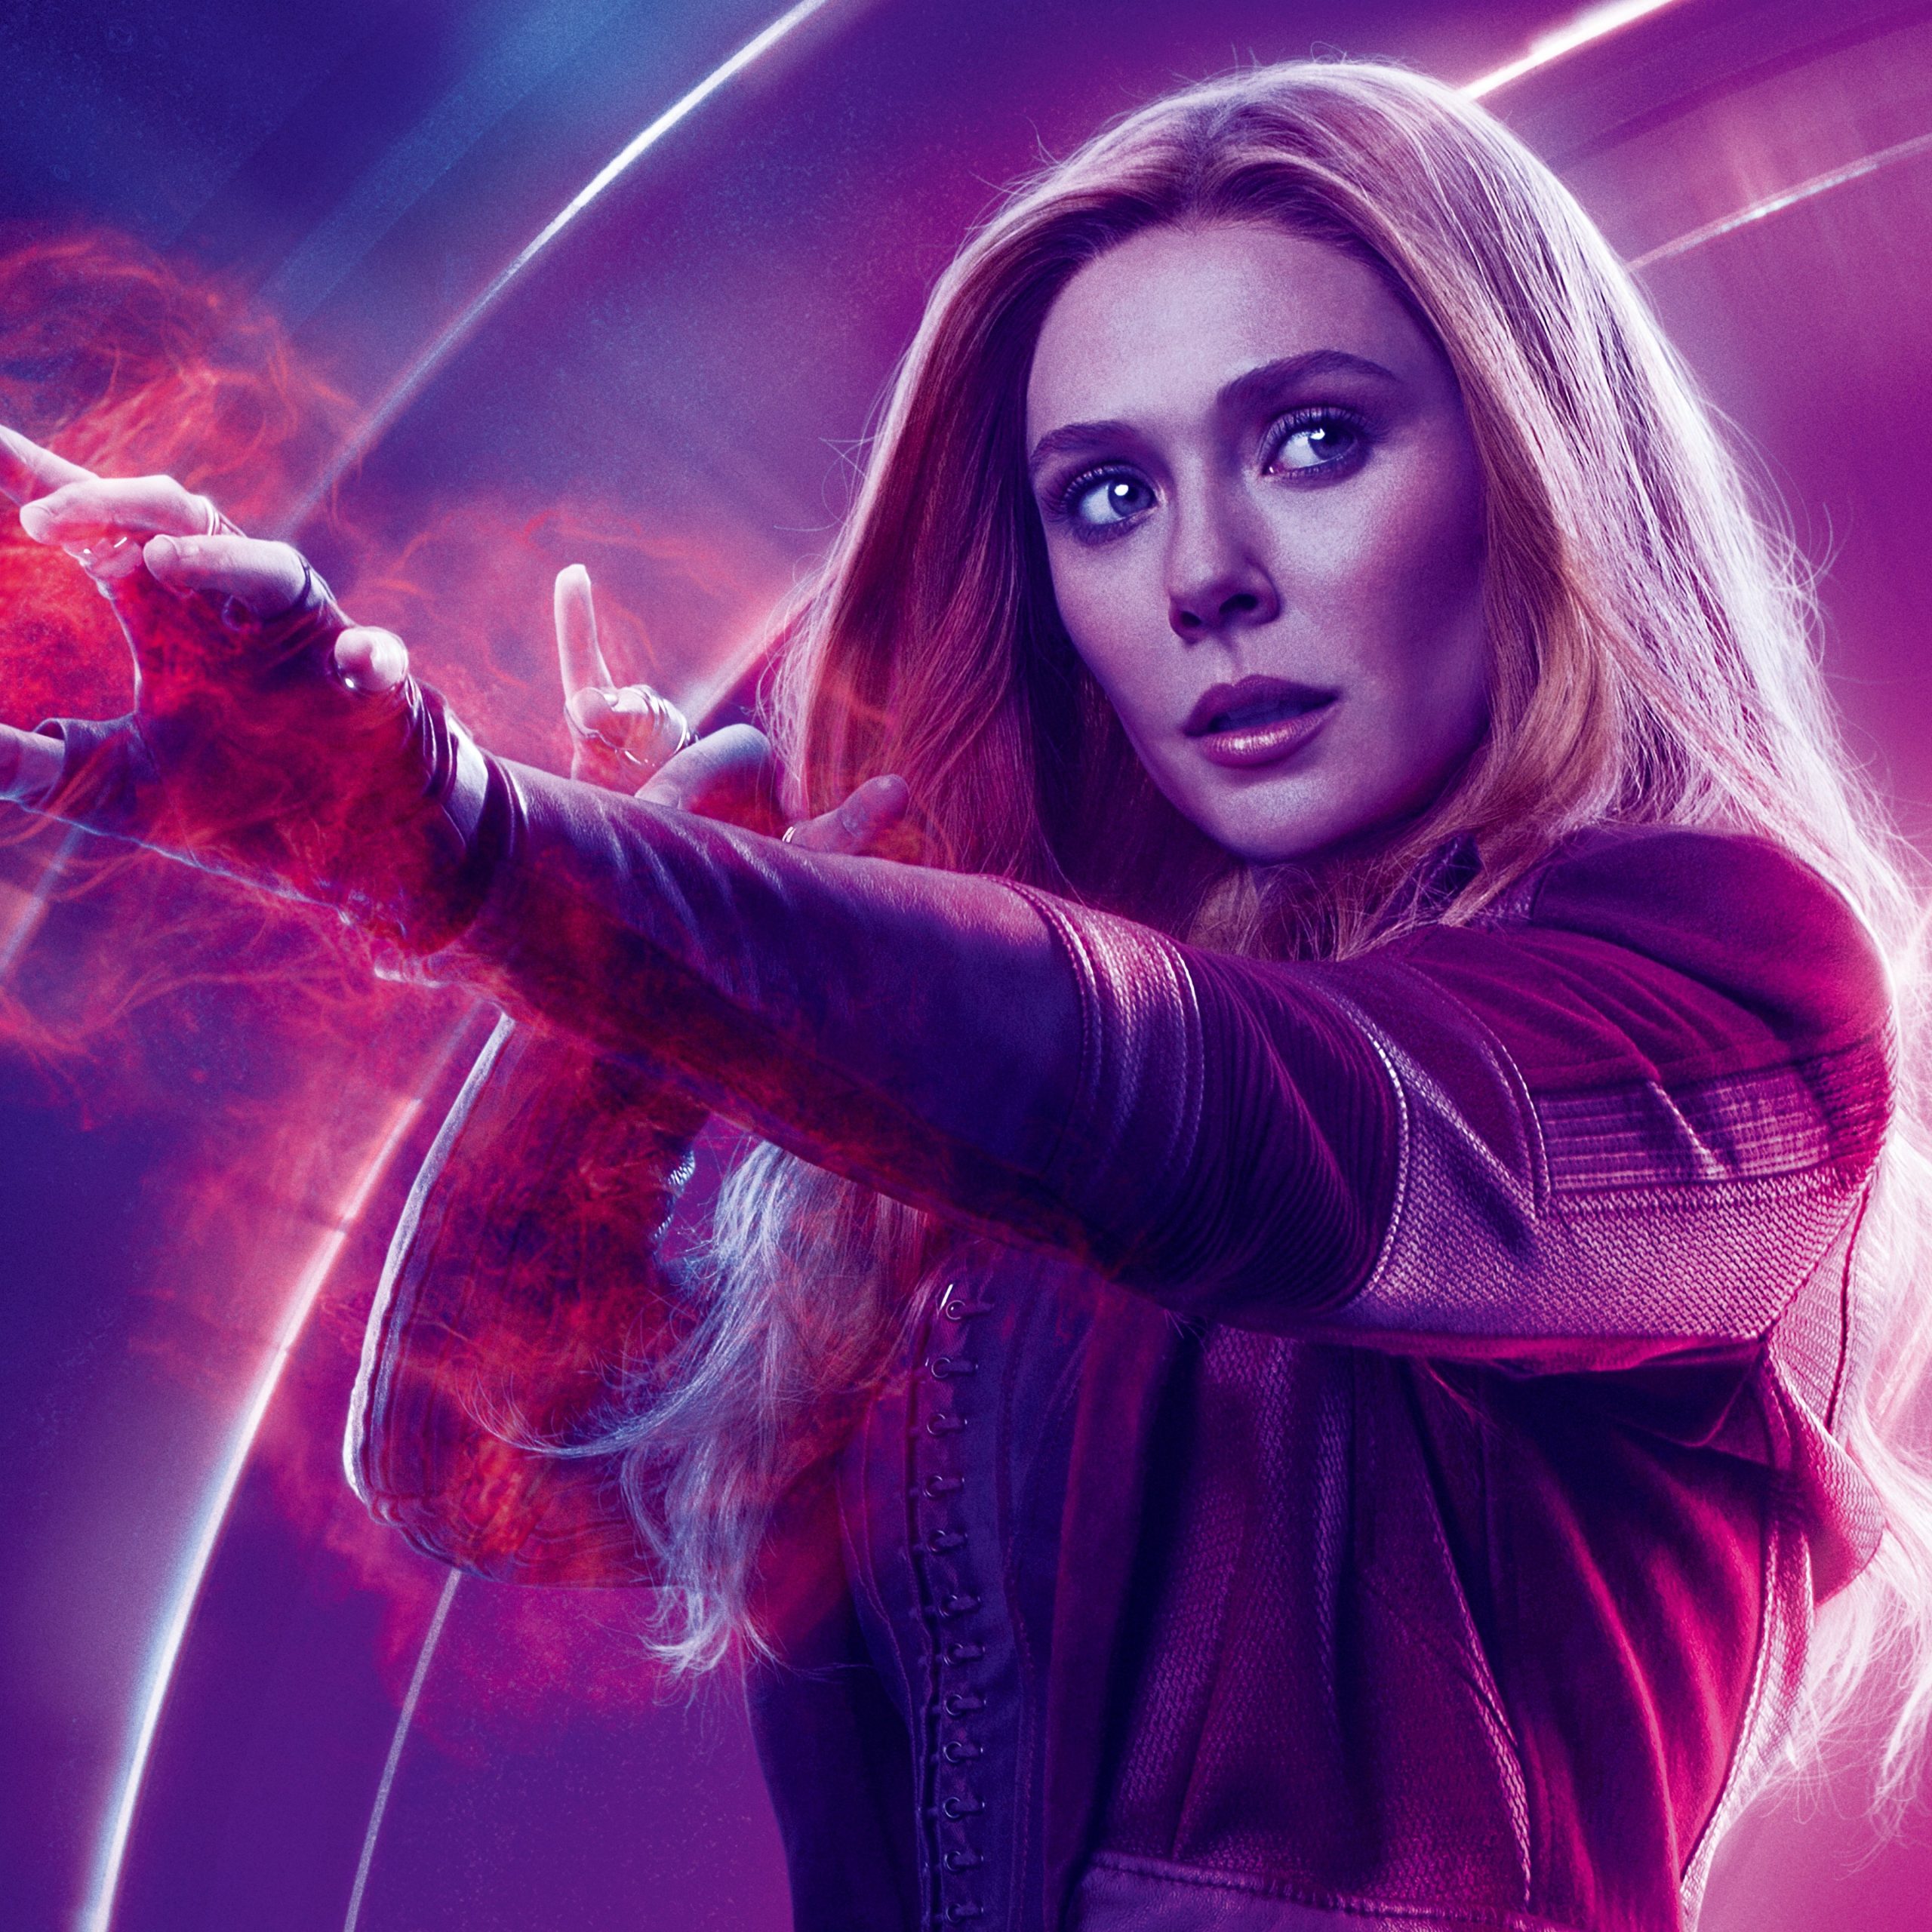 Avengers: Infinity War (2018) Scarlet Witch 8K Ultra HD Wallpaper